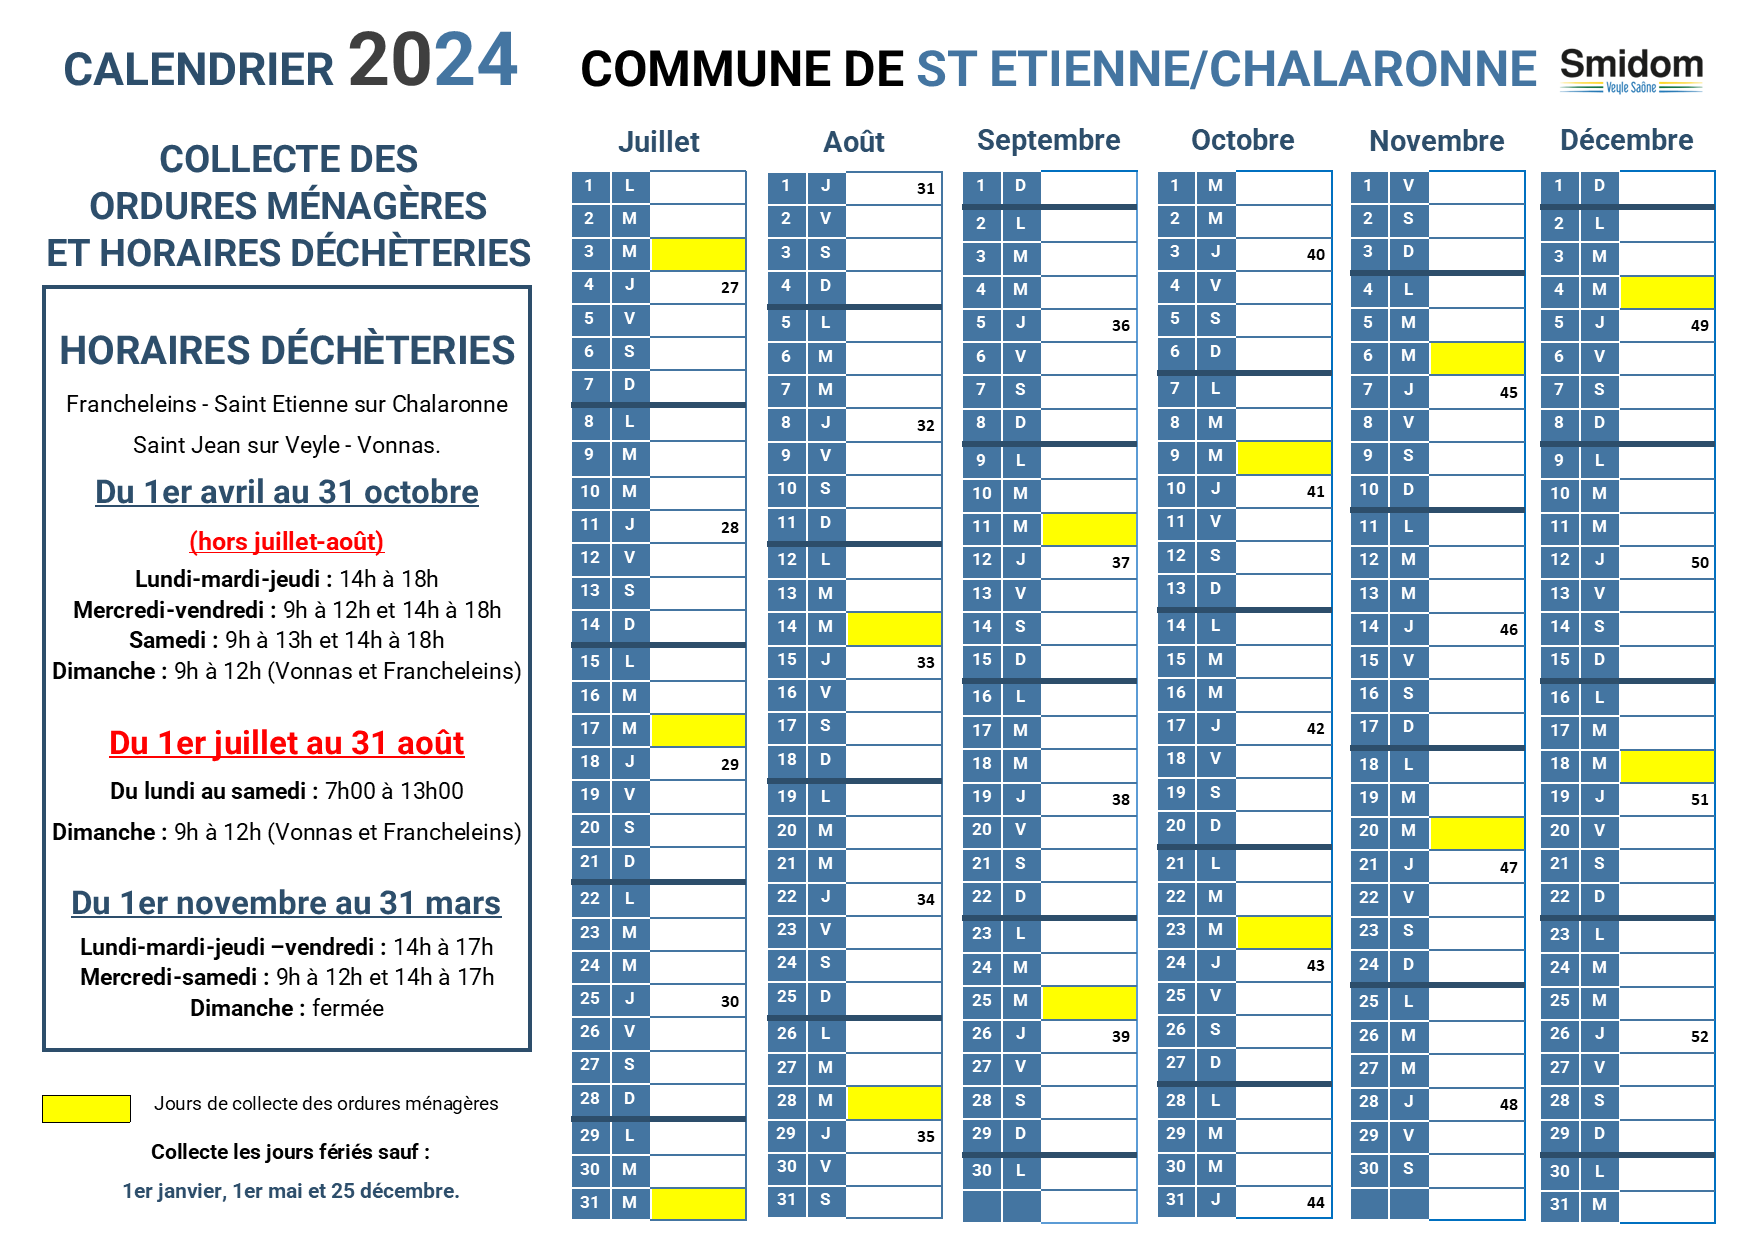 SAINT ETIENNE SUR CHALARONNE - Calendrier 2024 - 2.png